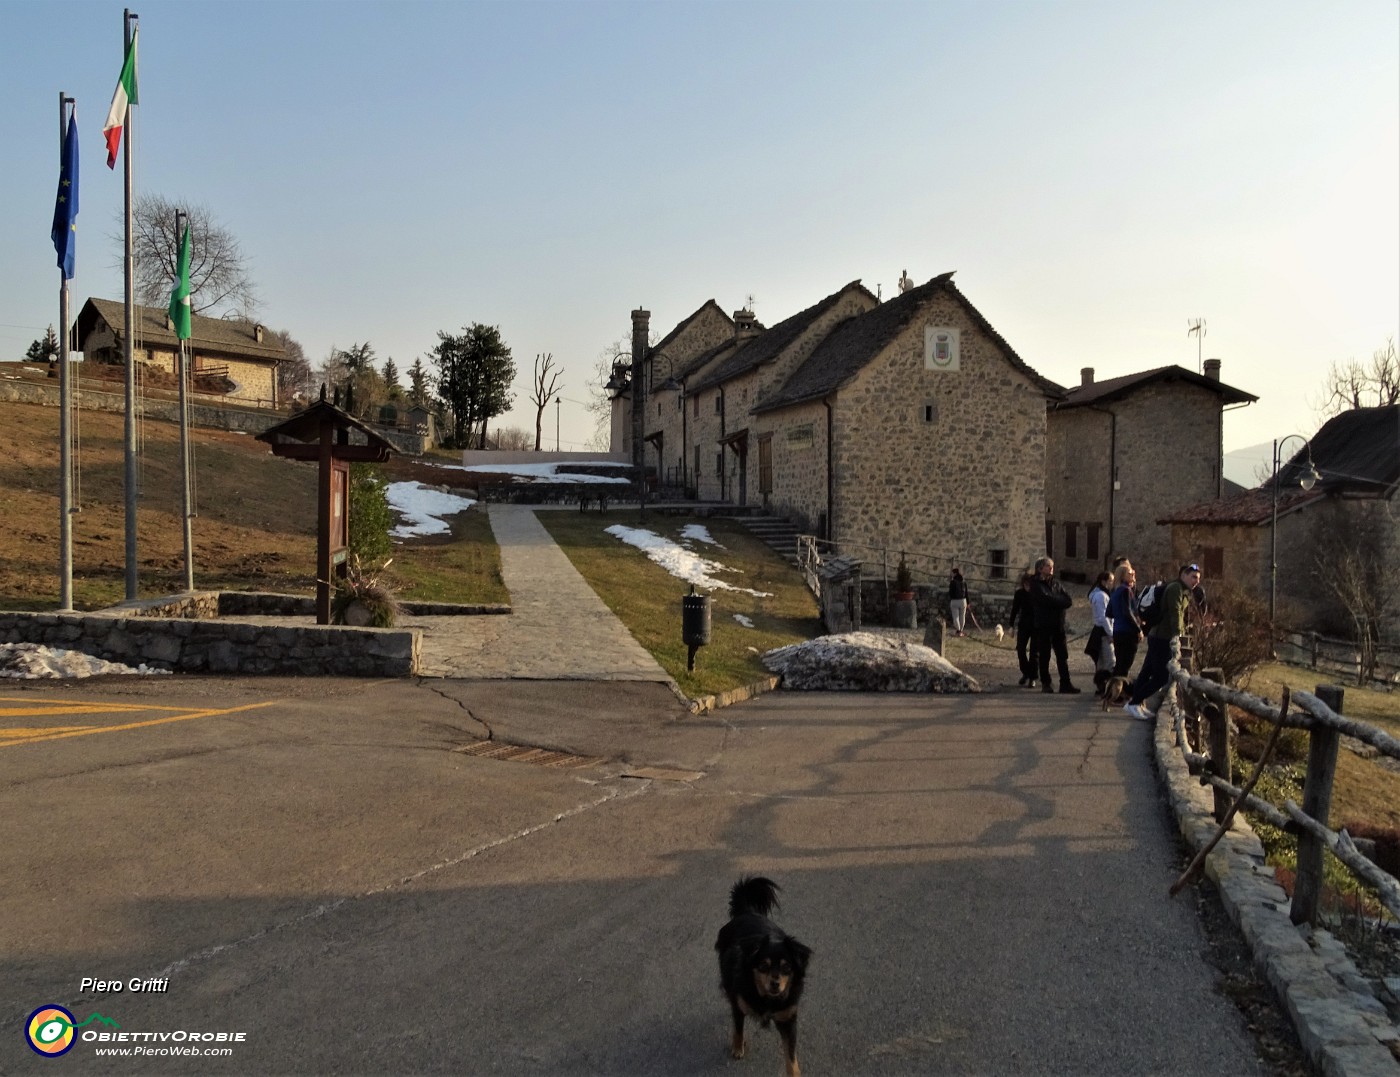 93 Visita a Arnosto, piccolo borgo antico di Fuipiano, ricco di storia, ben restaurato.JPG